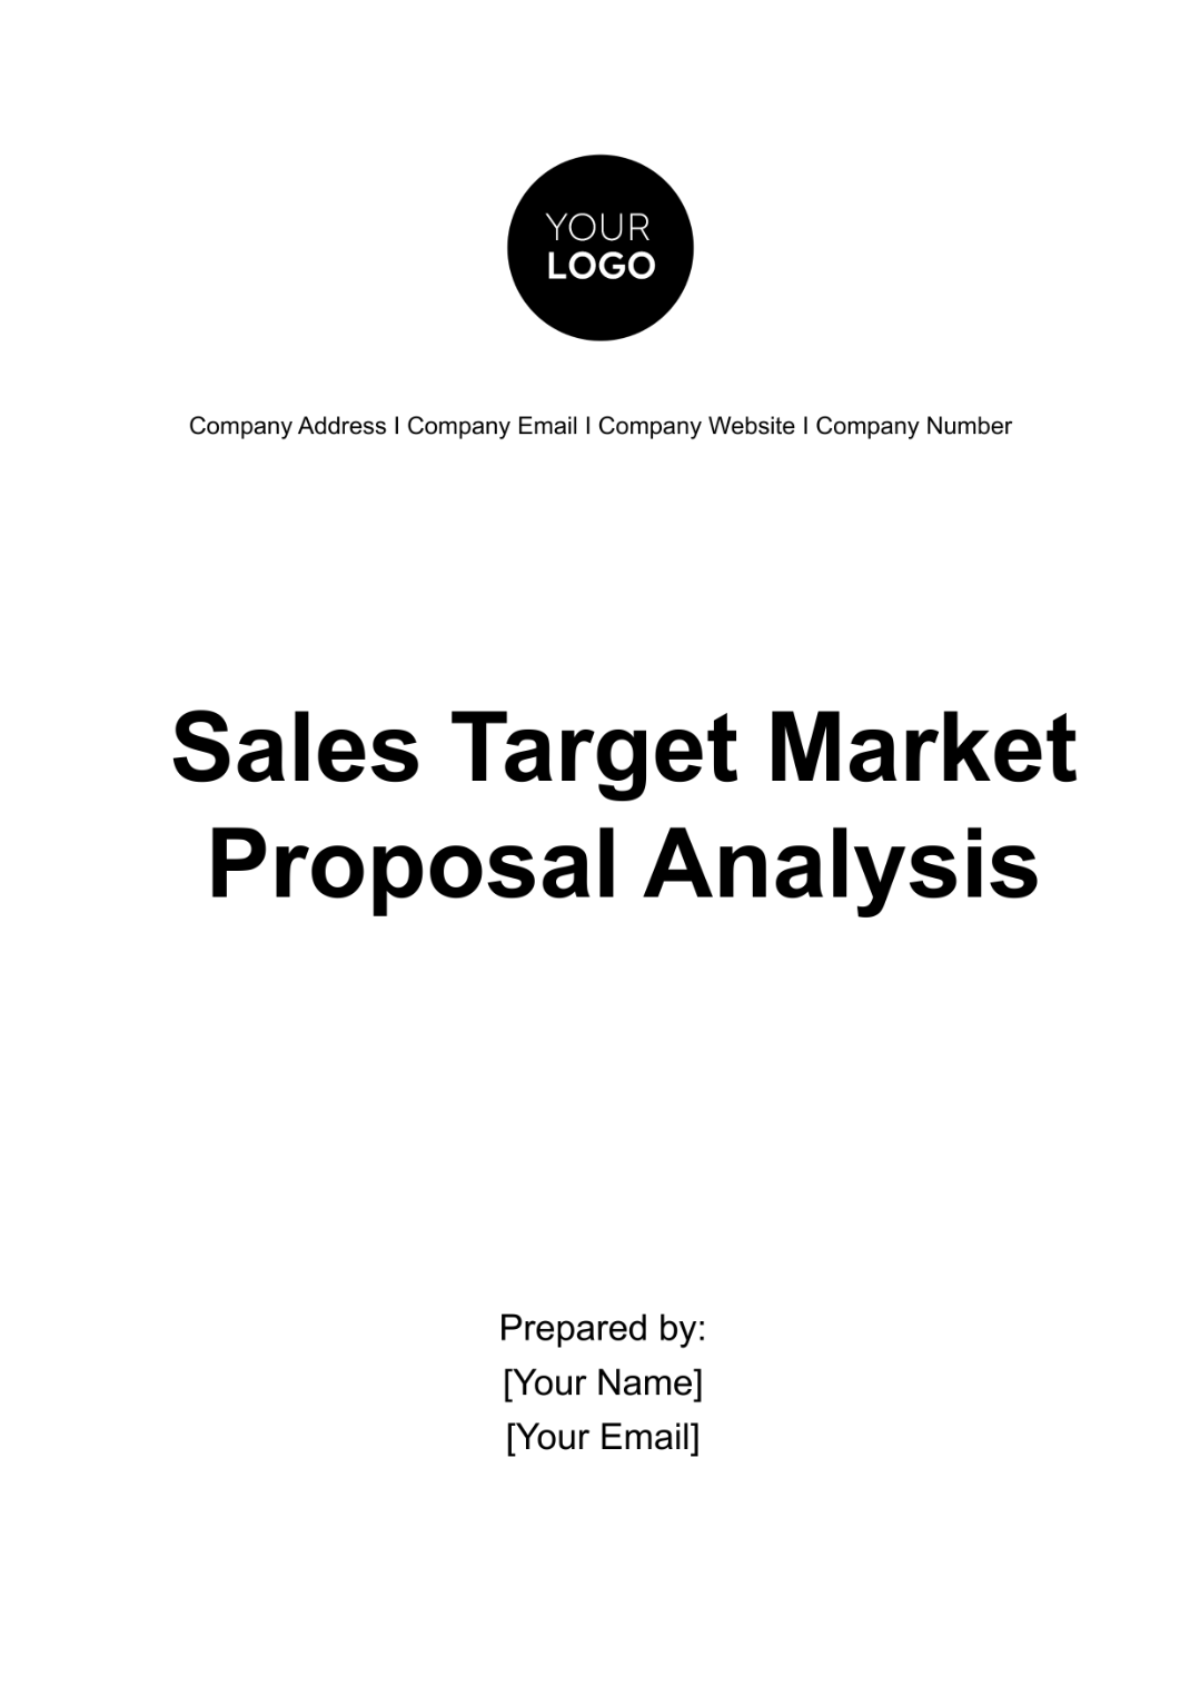 Free Sales Target Market Proposal Analysis Template